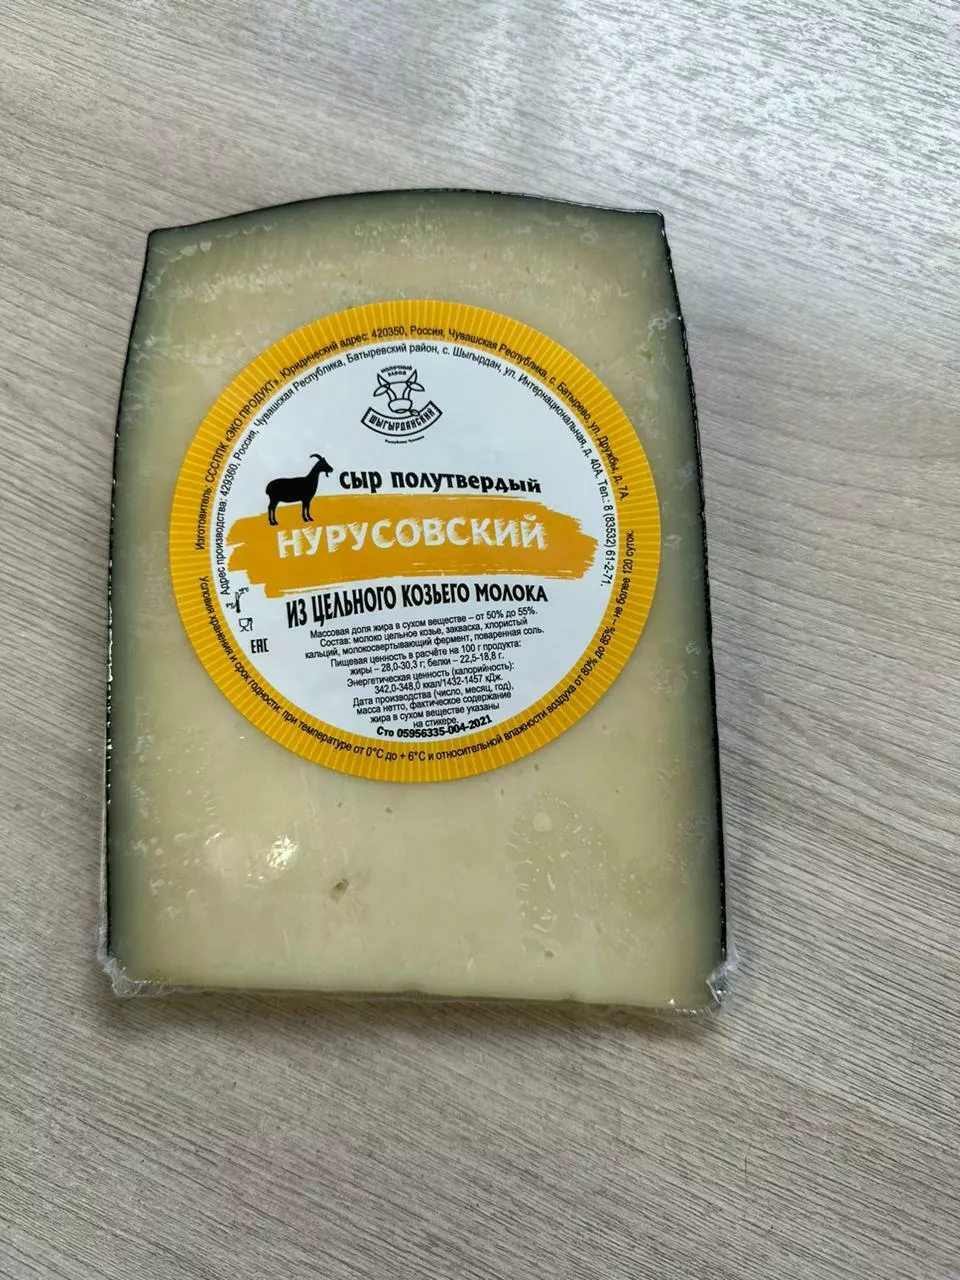 натуральный сыр, масло высокого качества в Чебоксарах и Чувашии 3